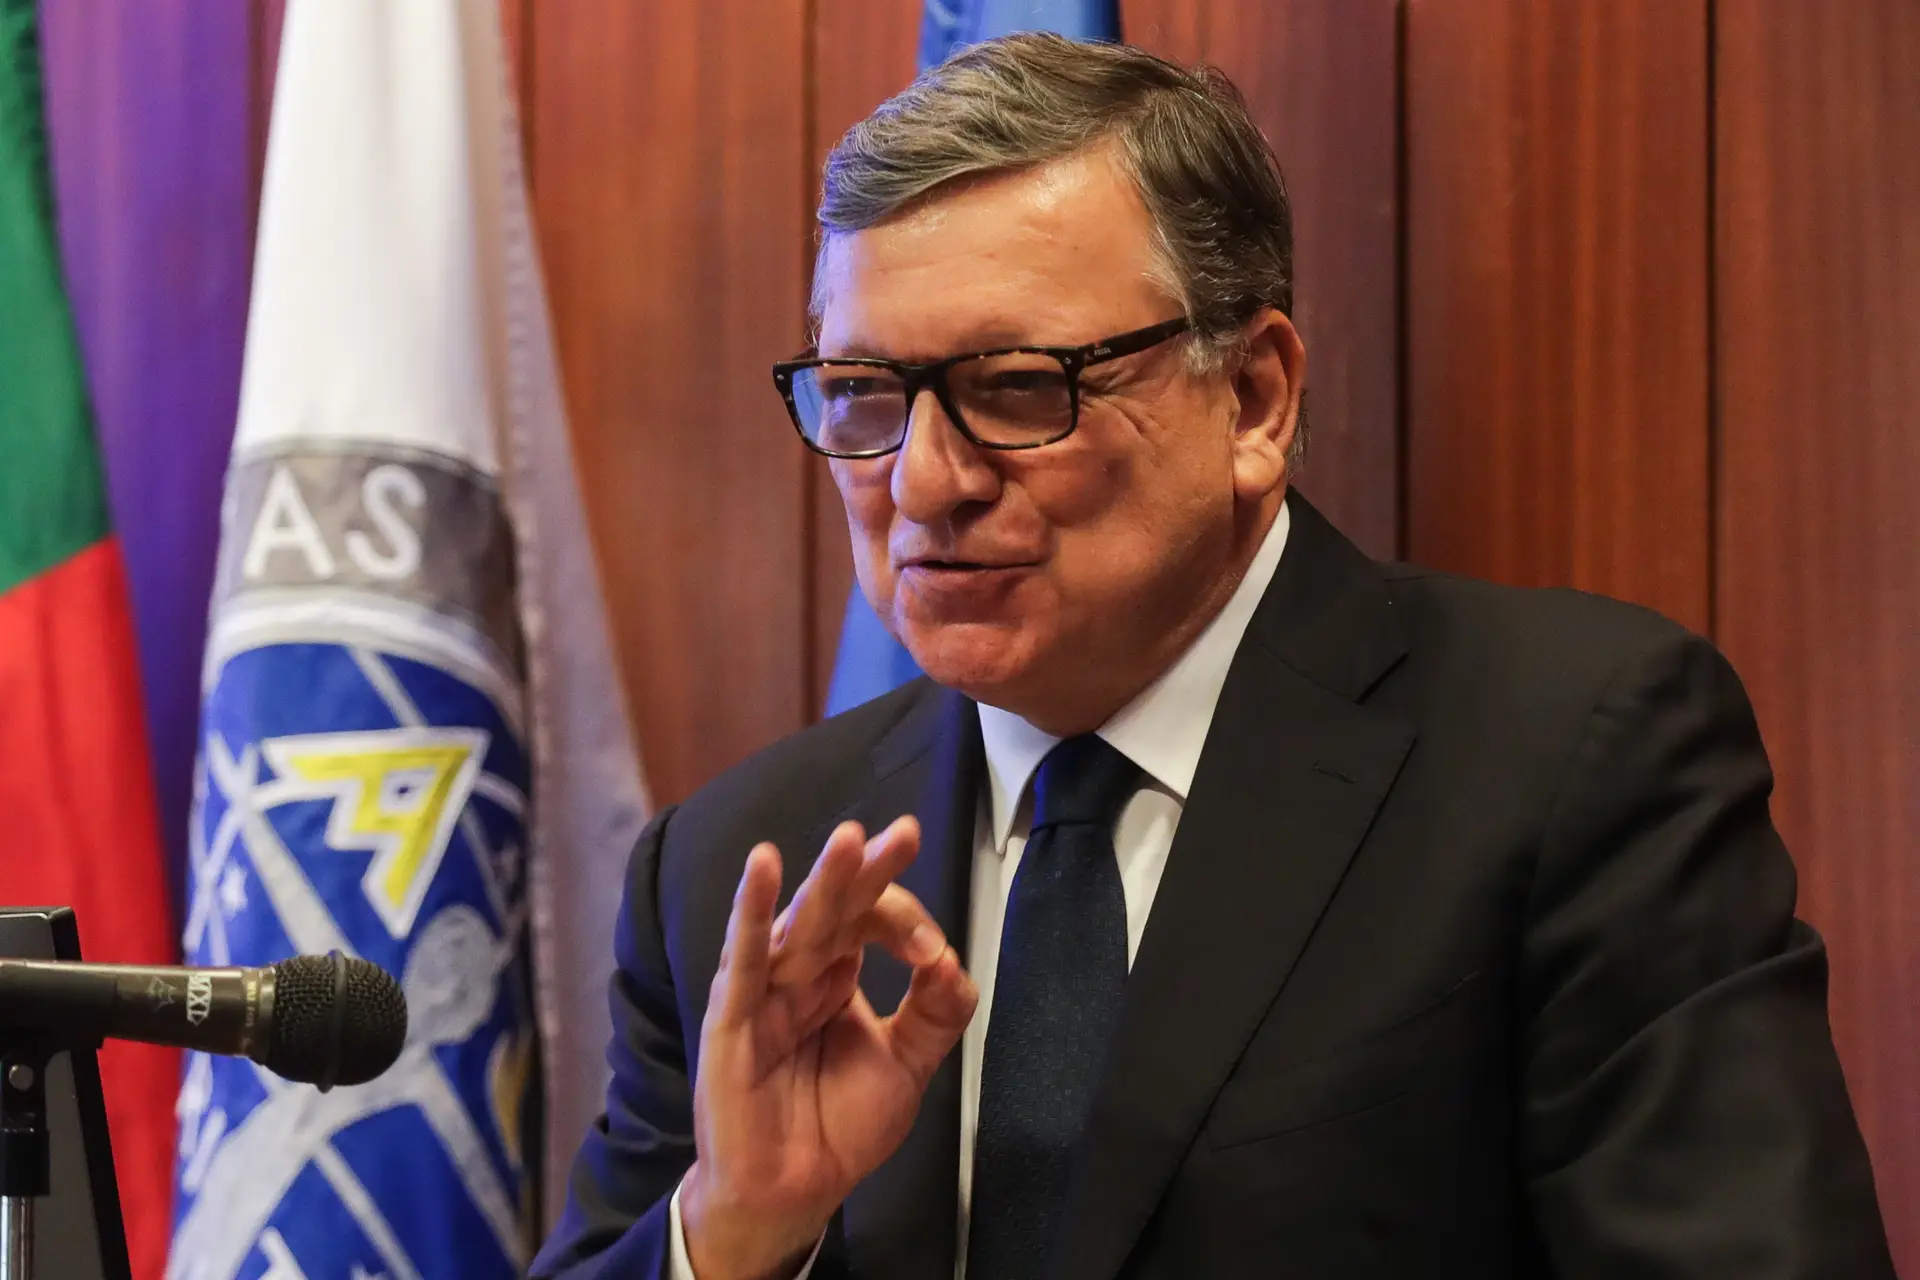 Barroso sai da presidência da Goldman Sachs International, mas vai liderar conselheiros do grupo